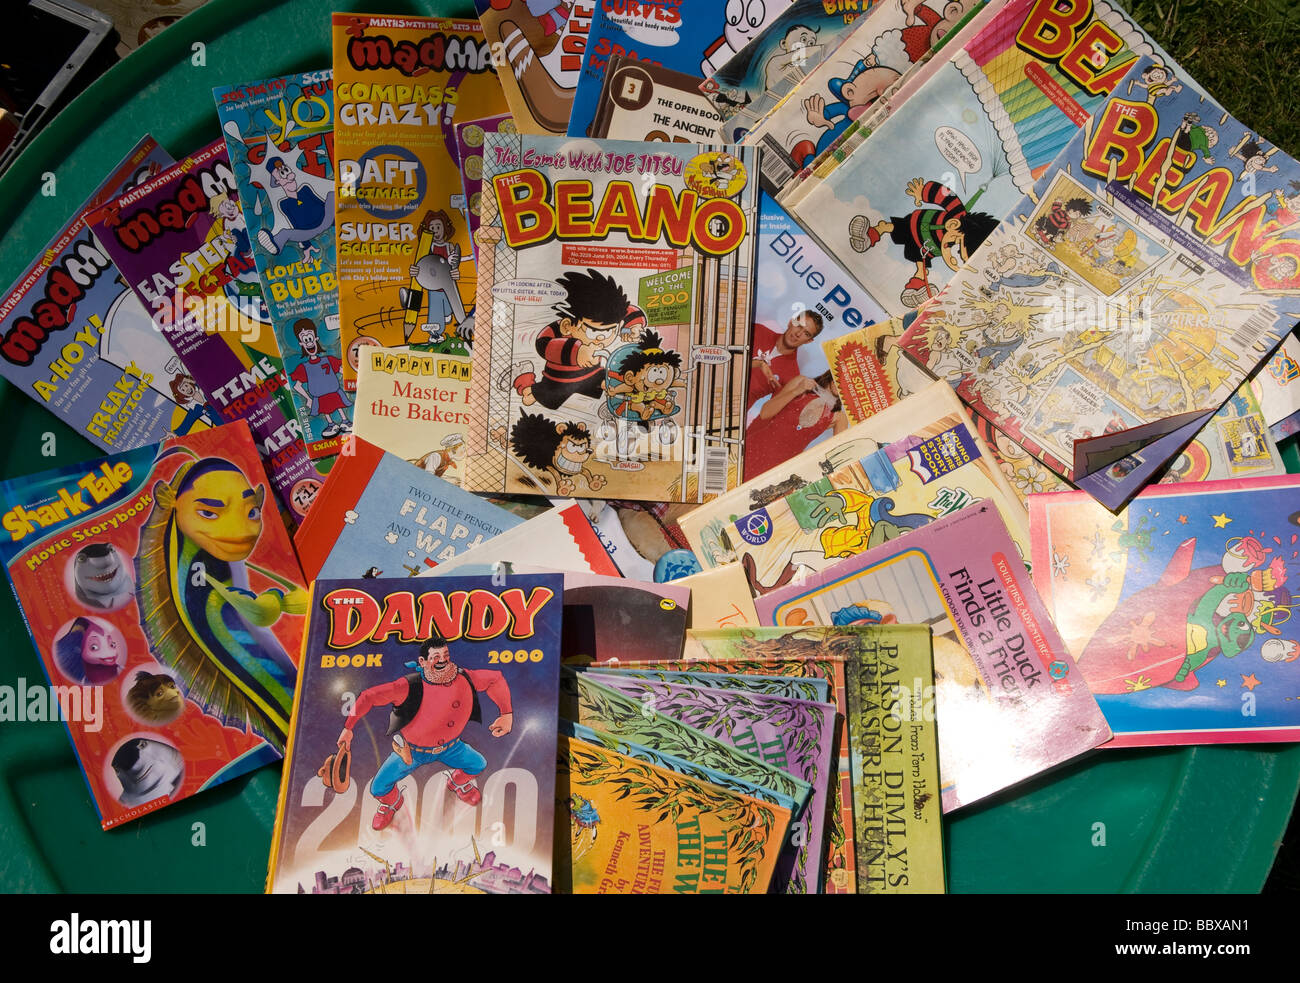 Visualización de comics en venta tradicional en una escuela de verano, fete Medstead, Alton, Hampshire, Reino Unido. Foto de stock